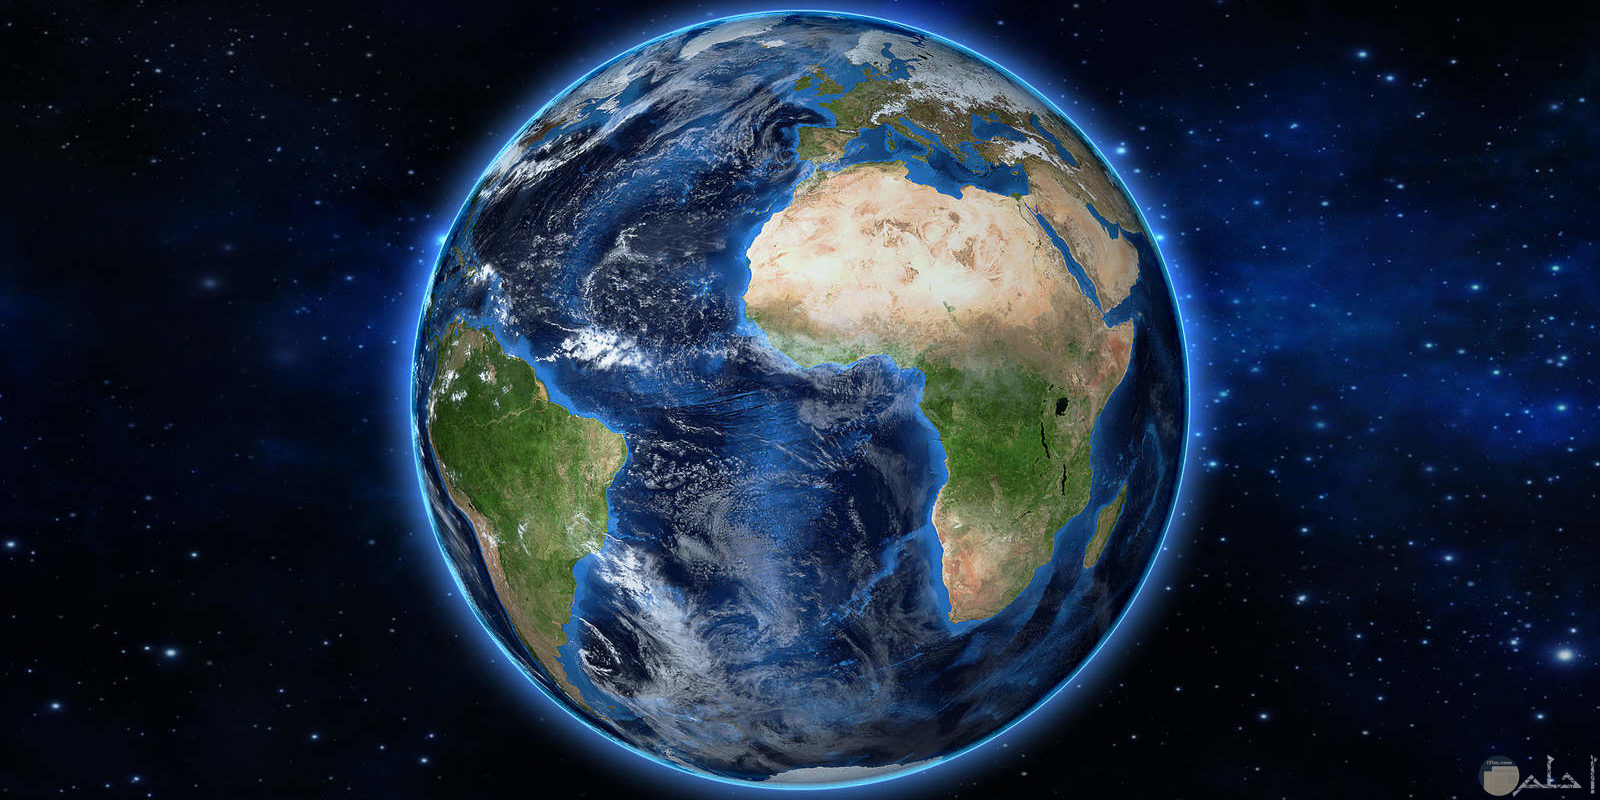 صورة كاملة لكوكب الارض يظهر فيها اليابس والمسطحات المائية بشكل واضح وجميل